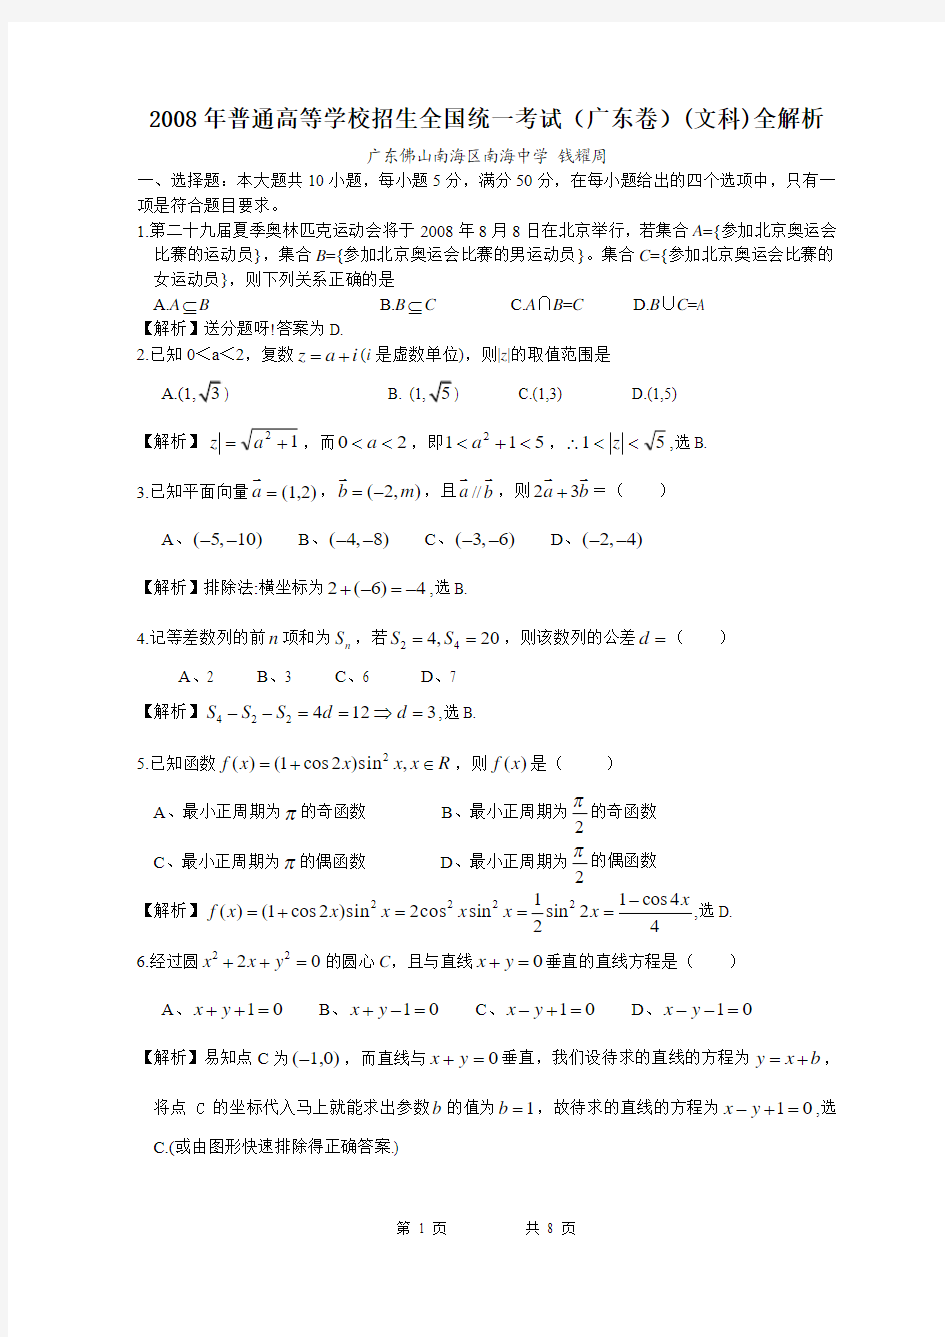 2008高考广东数学文科试卷含详细解答(全word版)